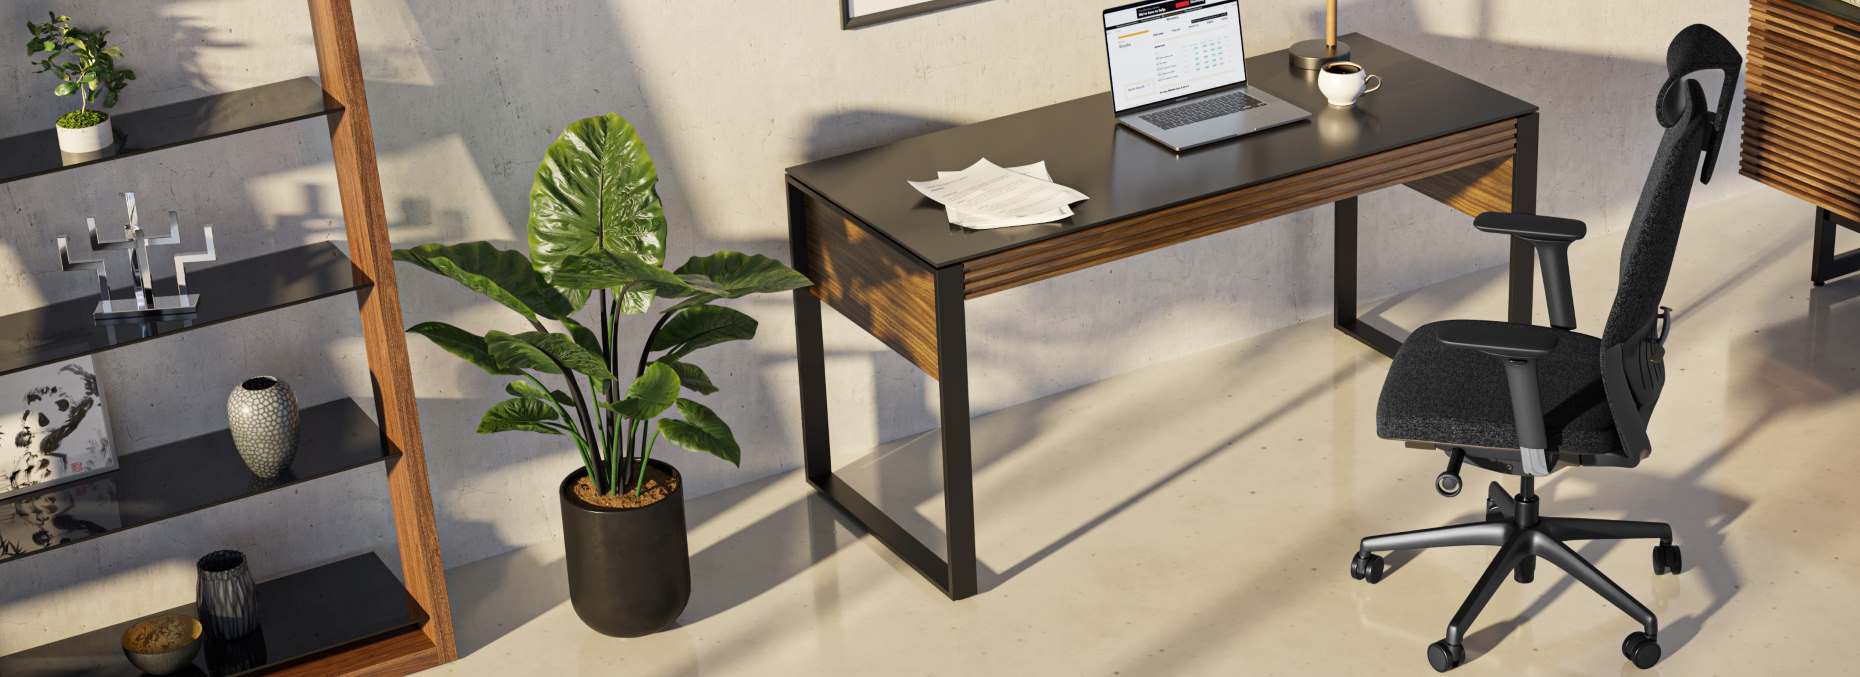 Corridor Desk by BDI with Stiletto shelving in walnut